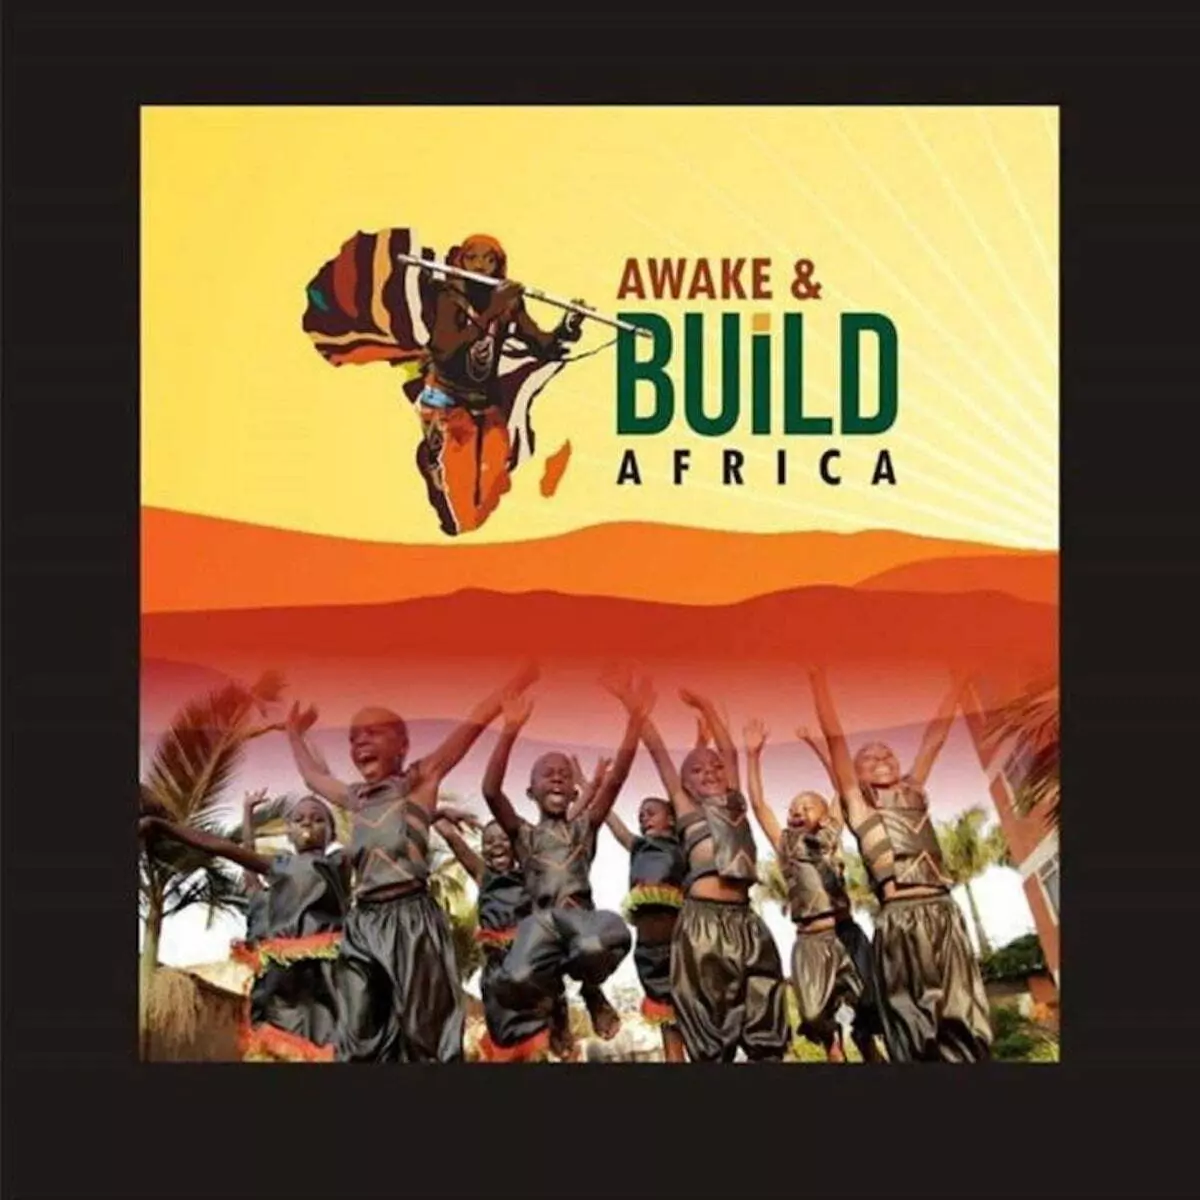 Awake & Build Africa by One Voice Choir Ghana on Apple Music